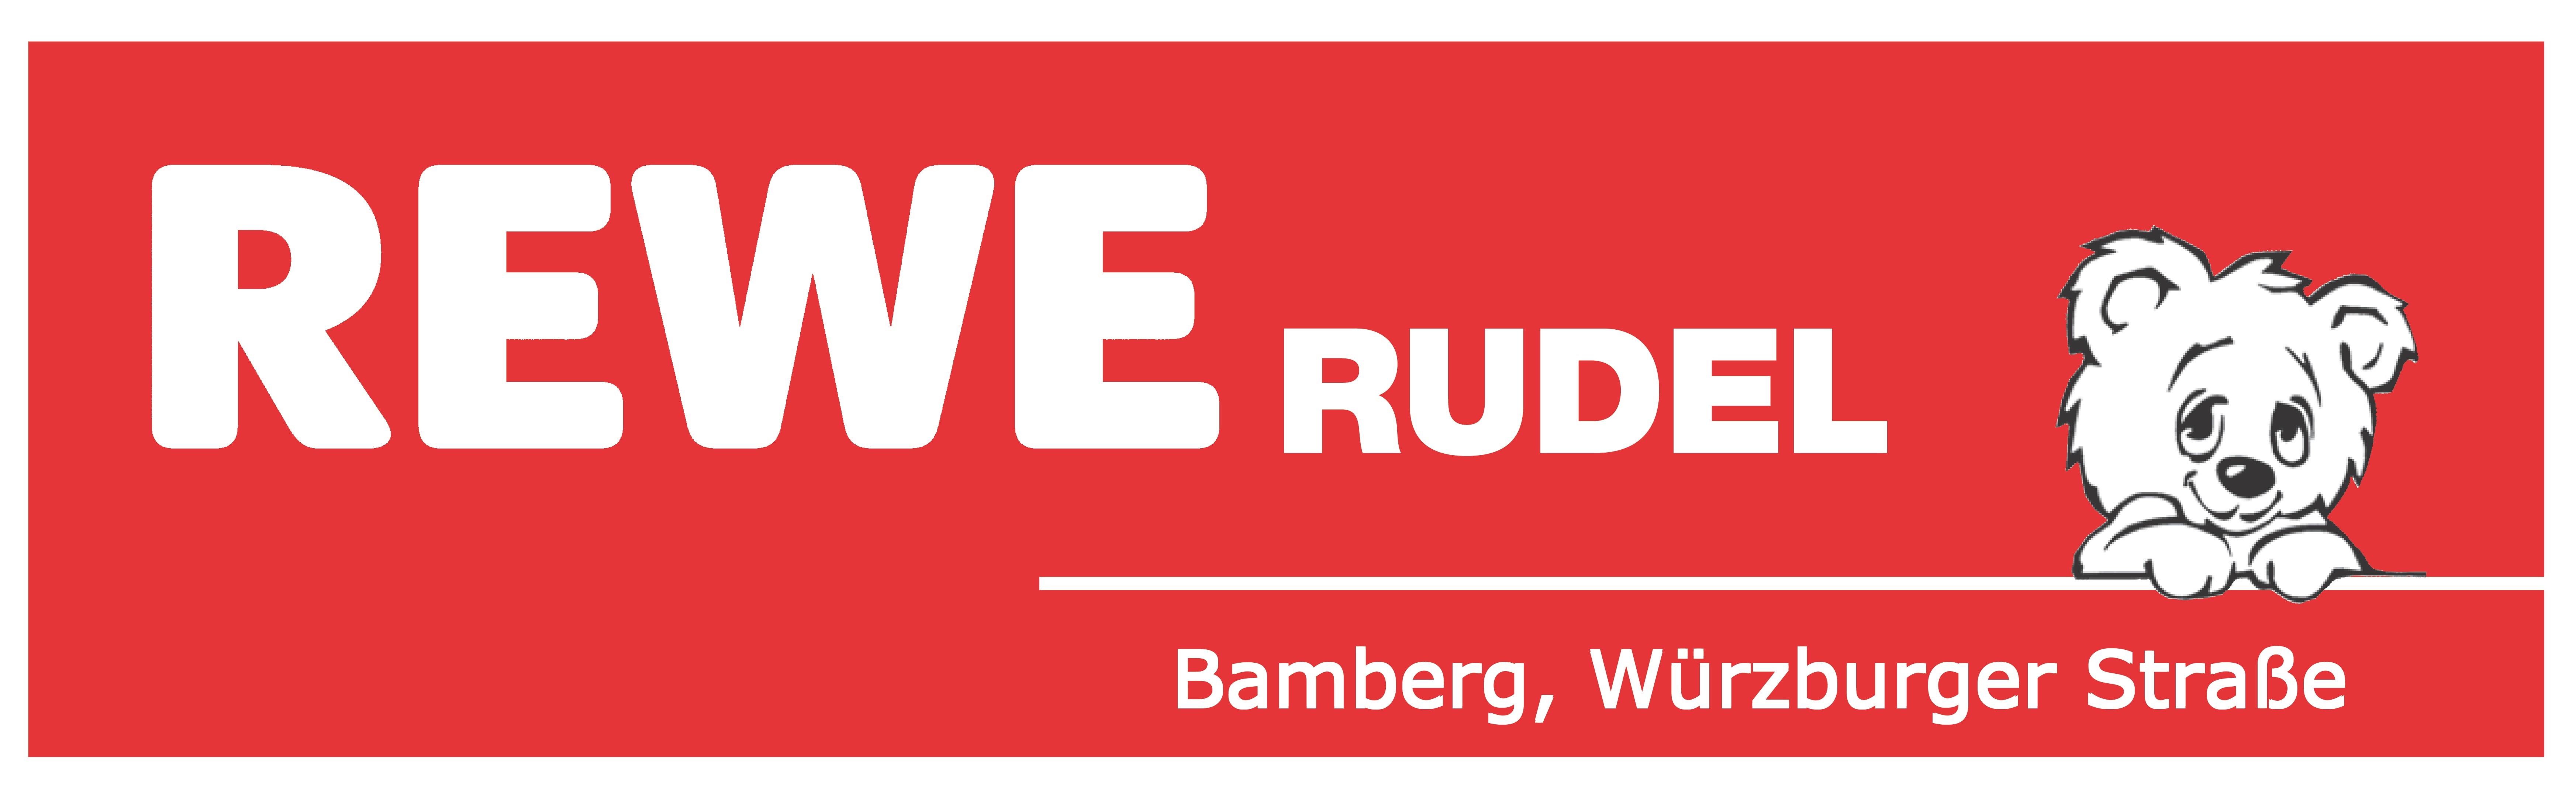 Rewe-Rudel_Logo_roter-Untergrund_weiss_neutral_JPEG